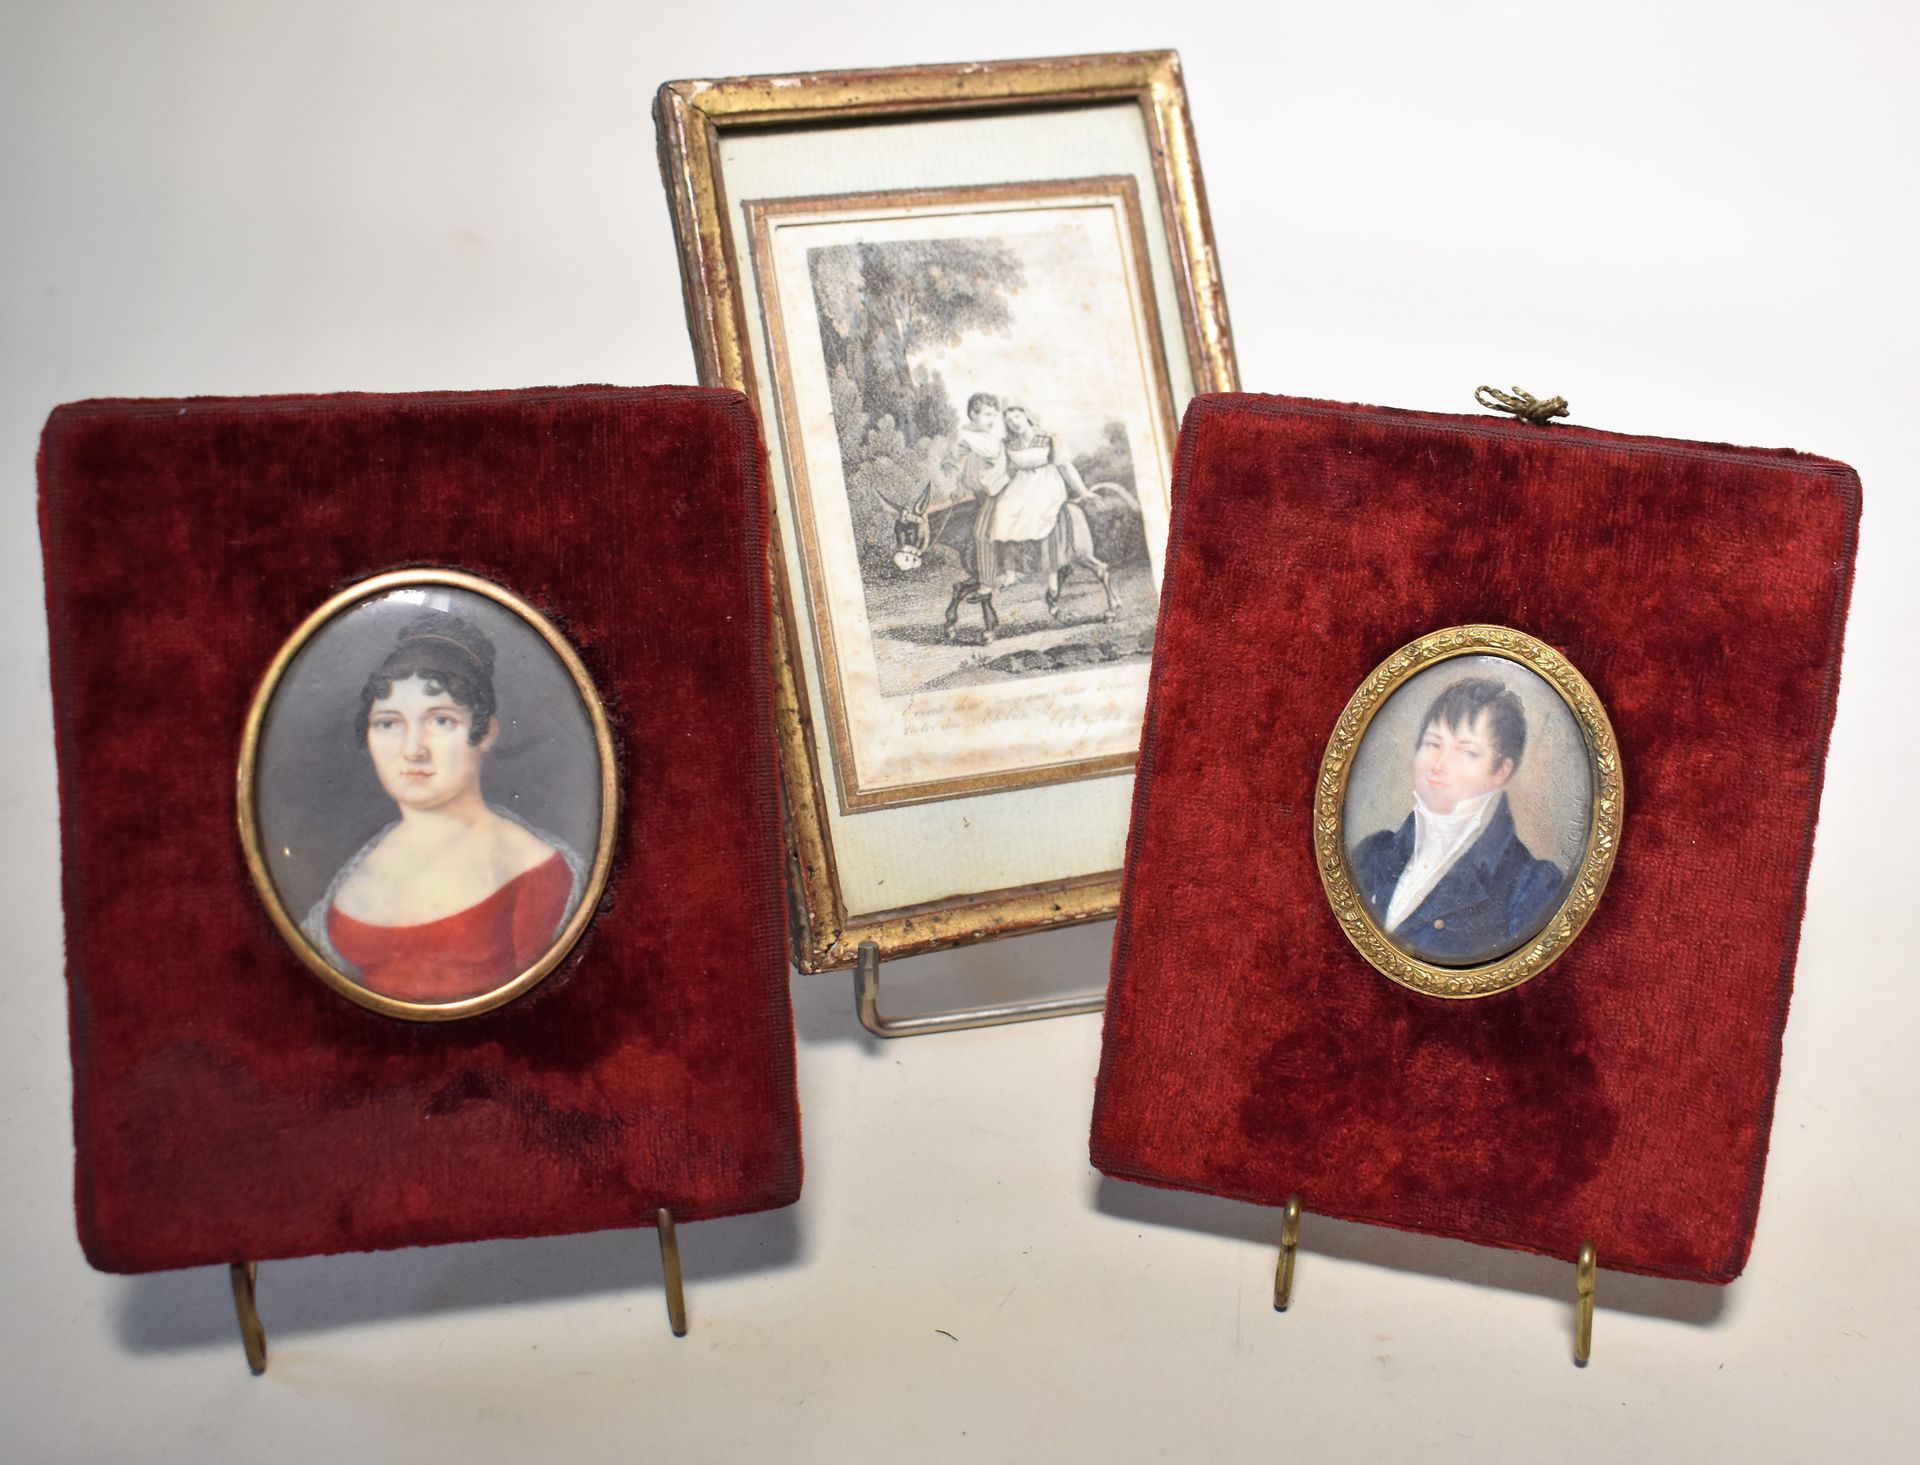 Null 两幅小型画：右下角有签名的男子肖像和穿红衣服的女子肖像。19世纪。高度：5和7厘米

附：一个有框的VIGNETTE。

交付给书房的地段